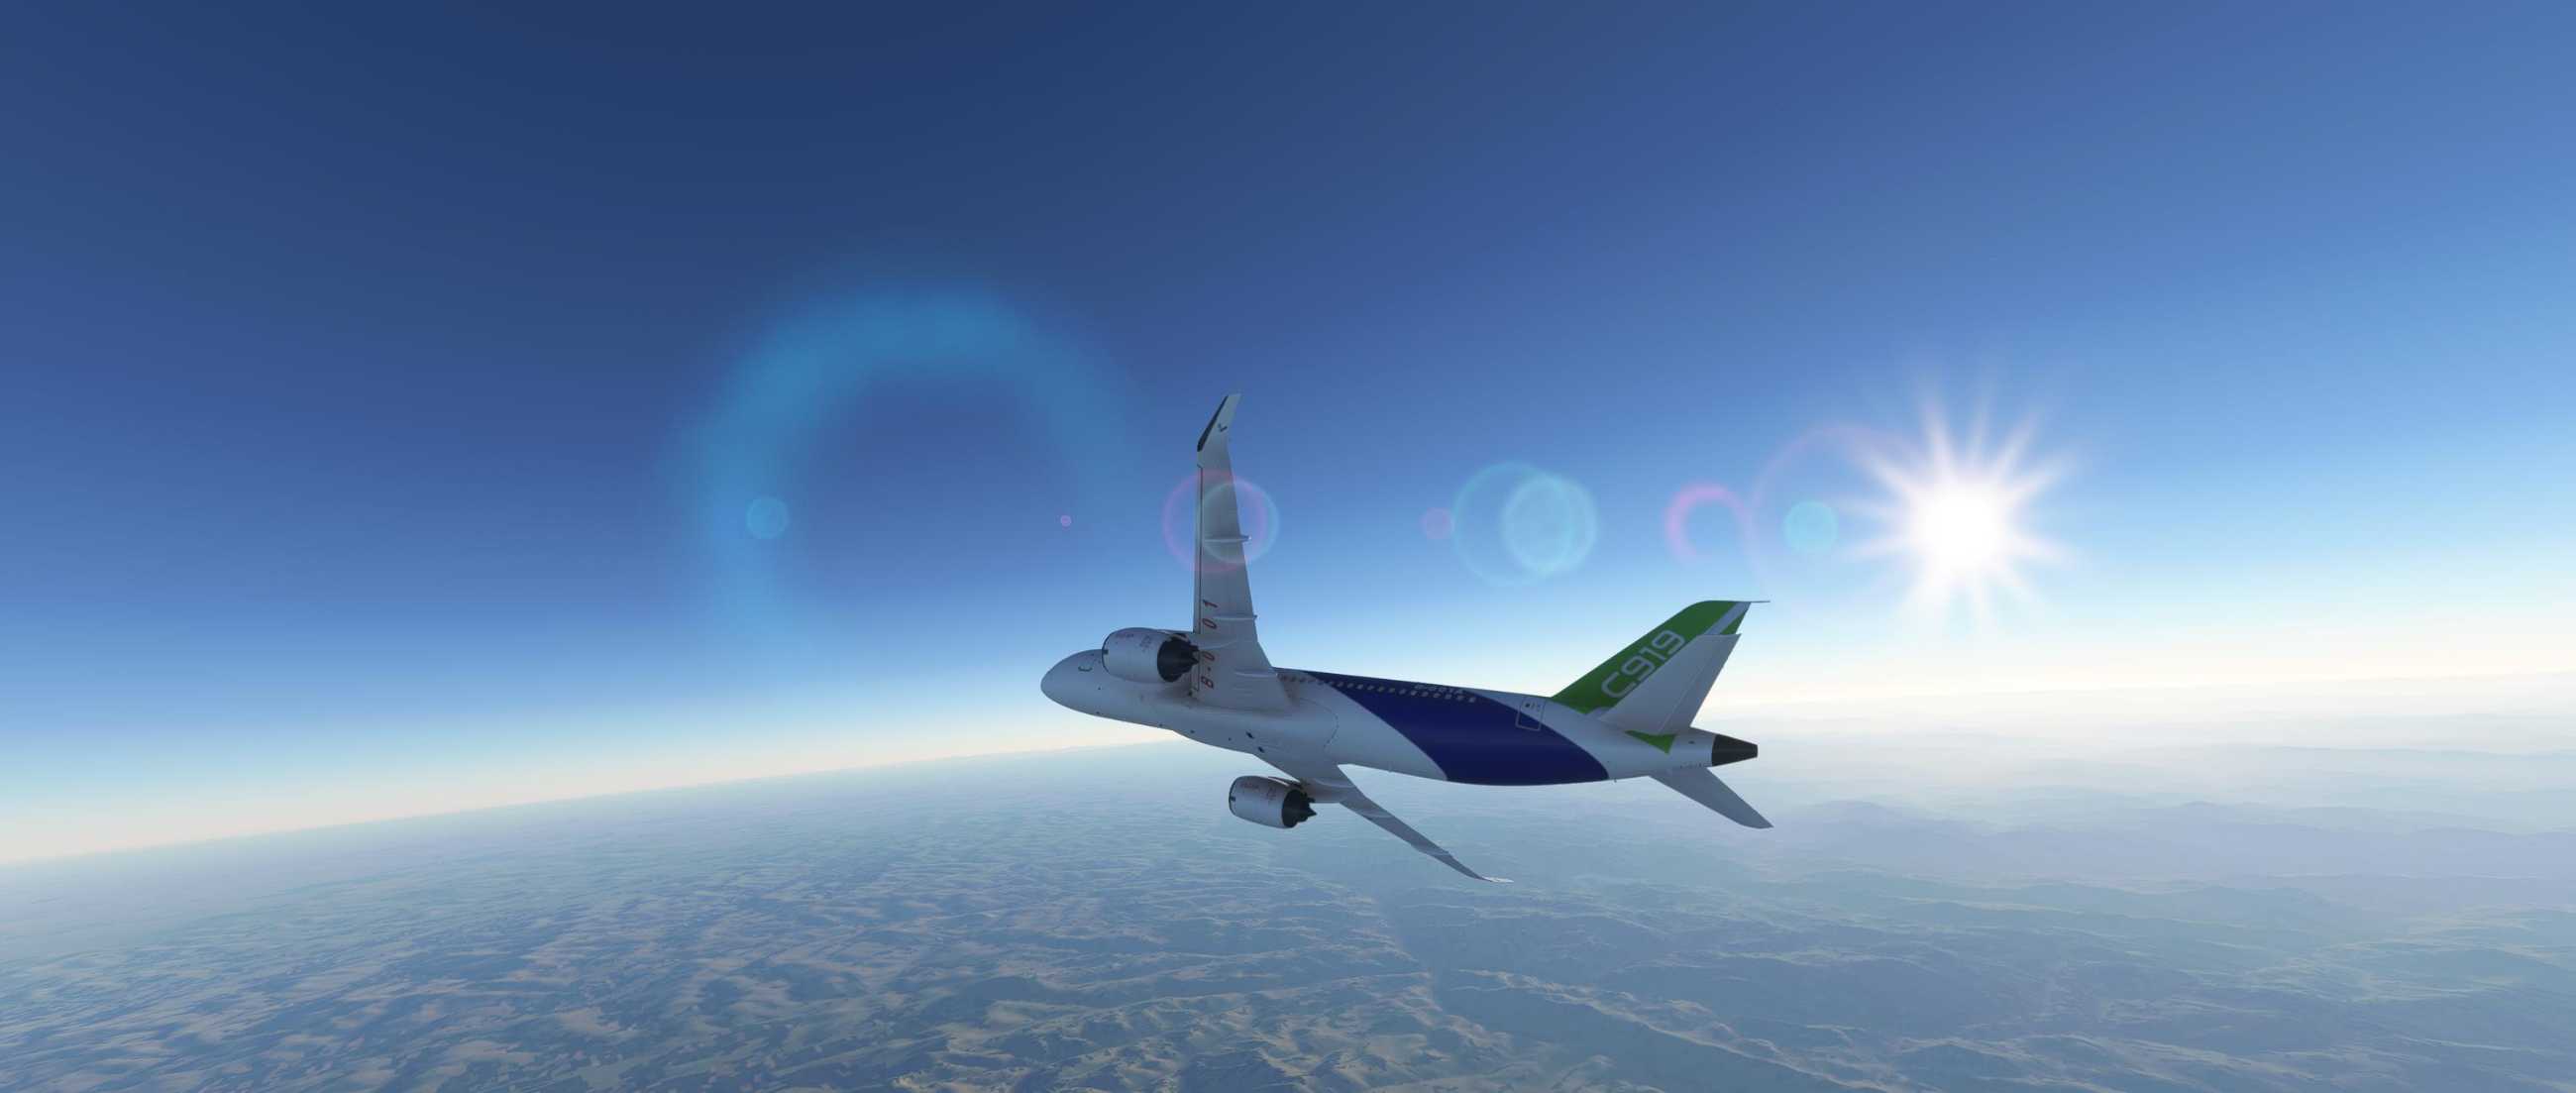 FYCYC-C919 国产大飞机机模 微软模拟飞行演示-1525 